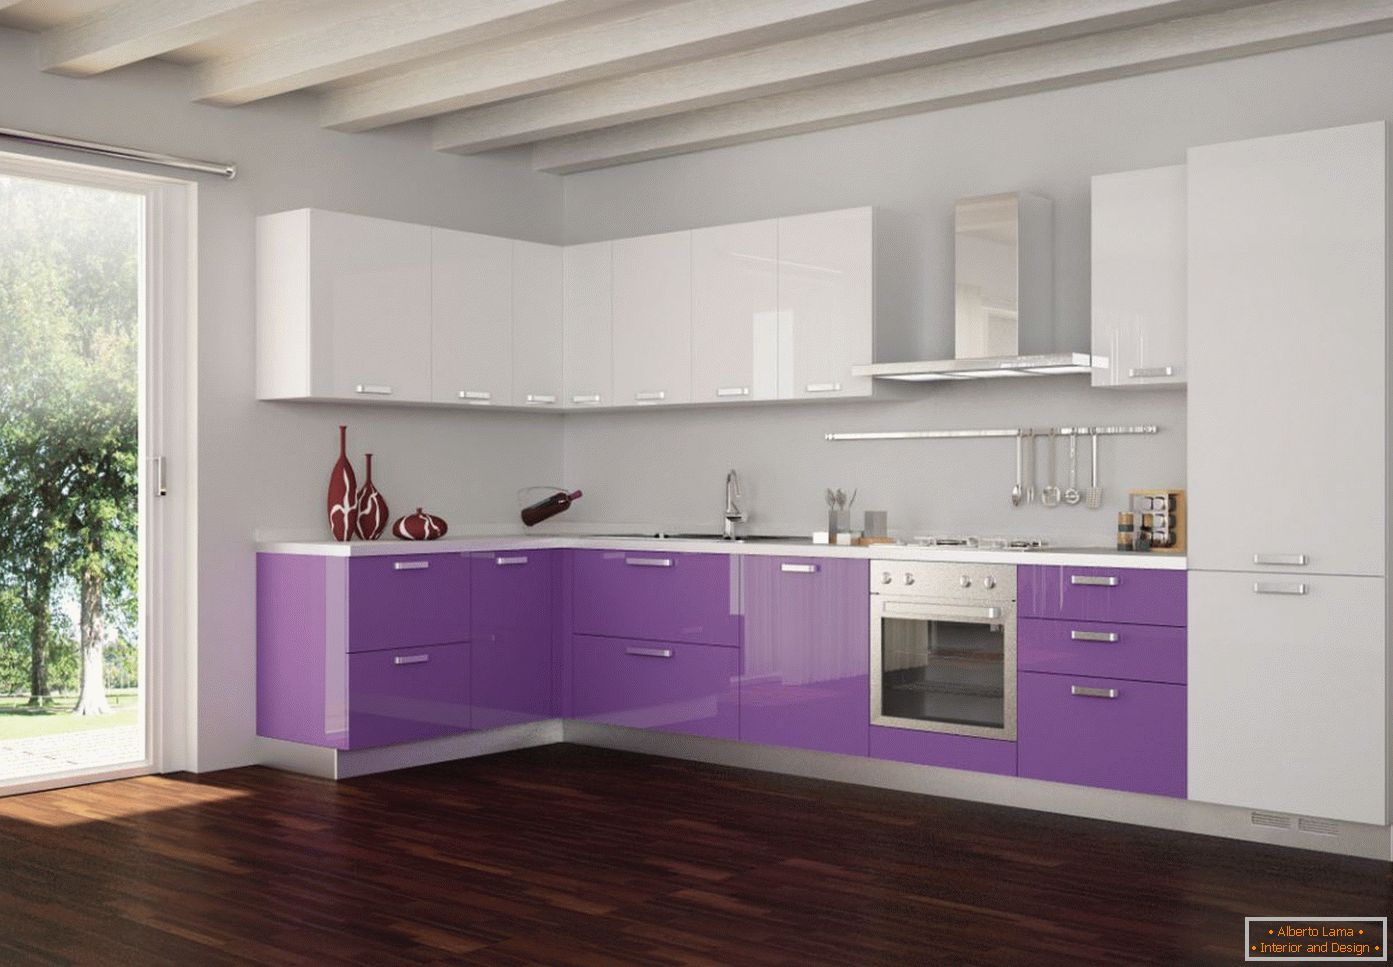 Purple and white in kitchen design